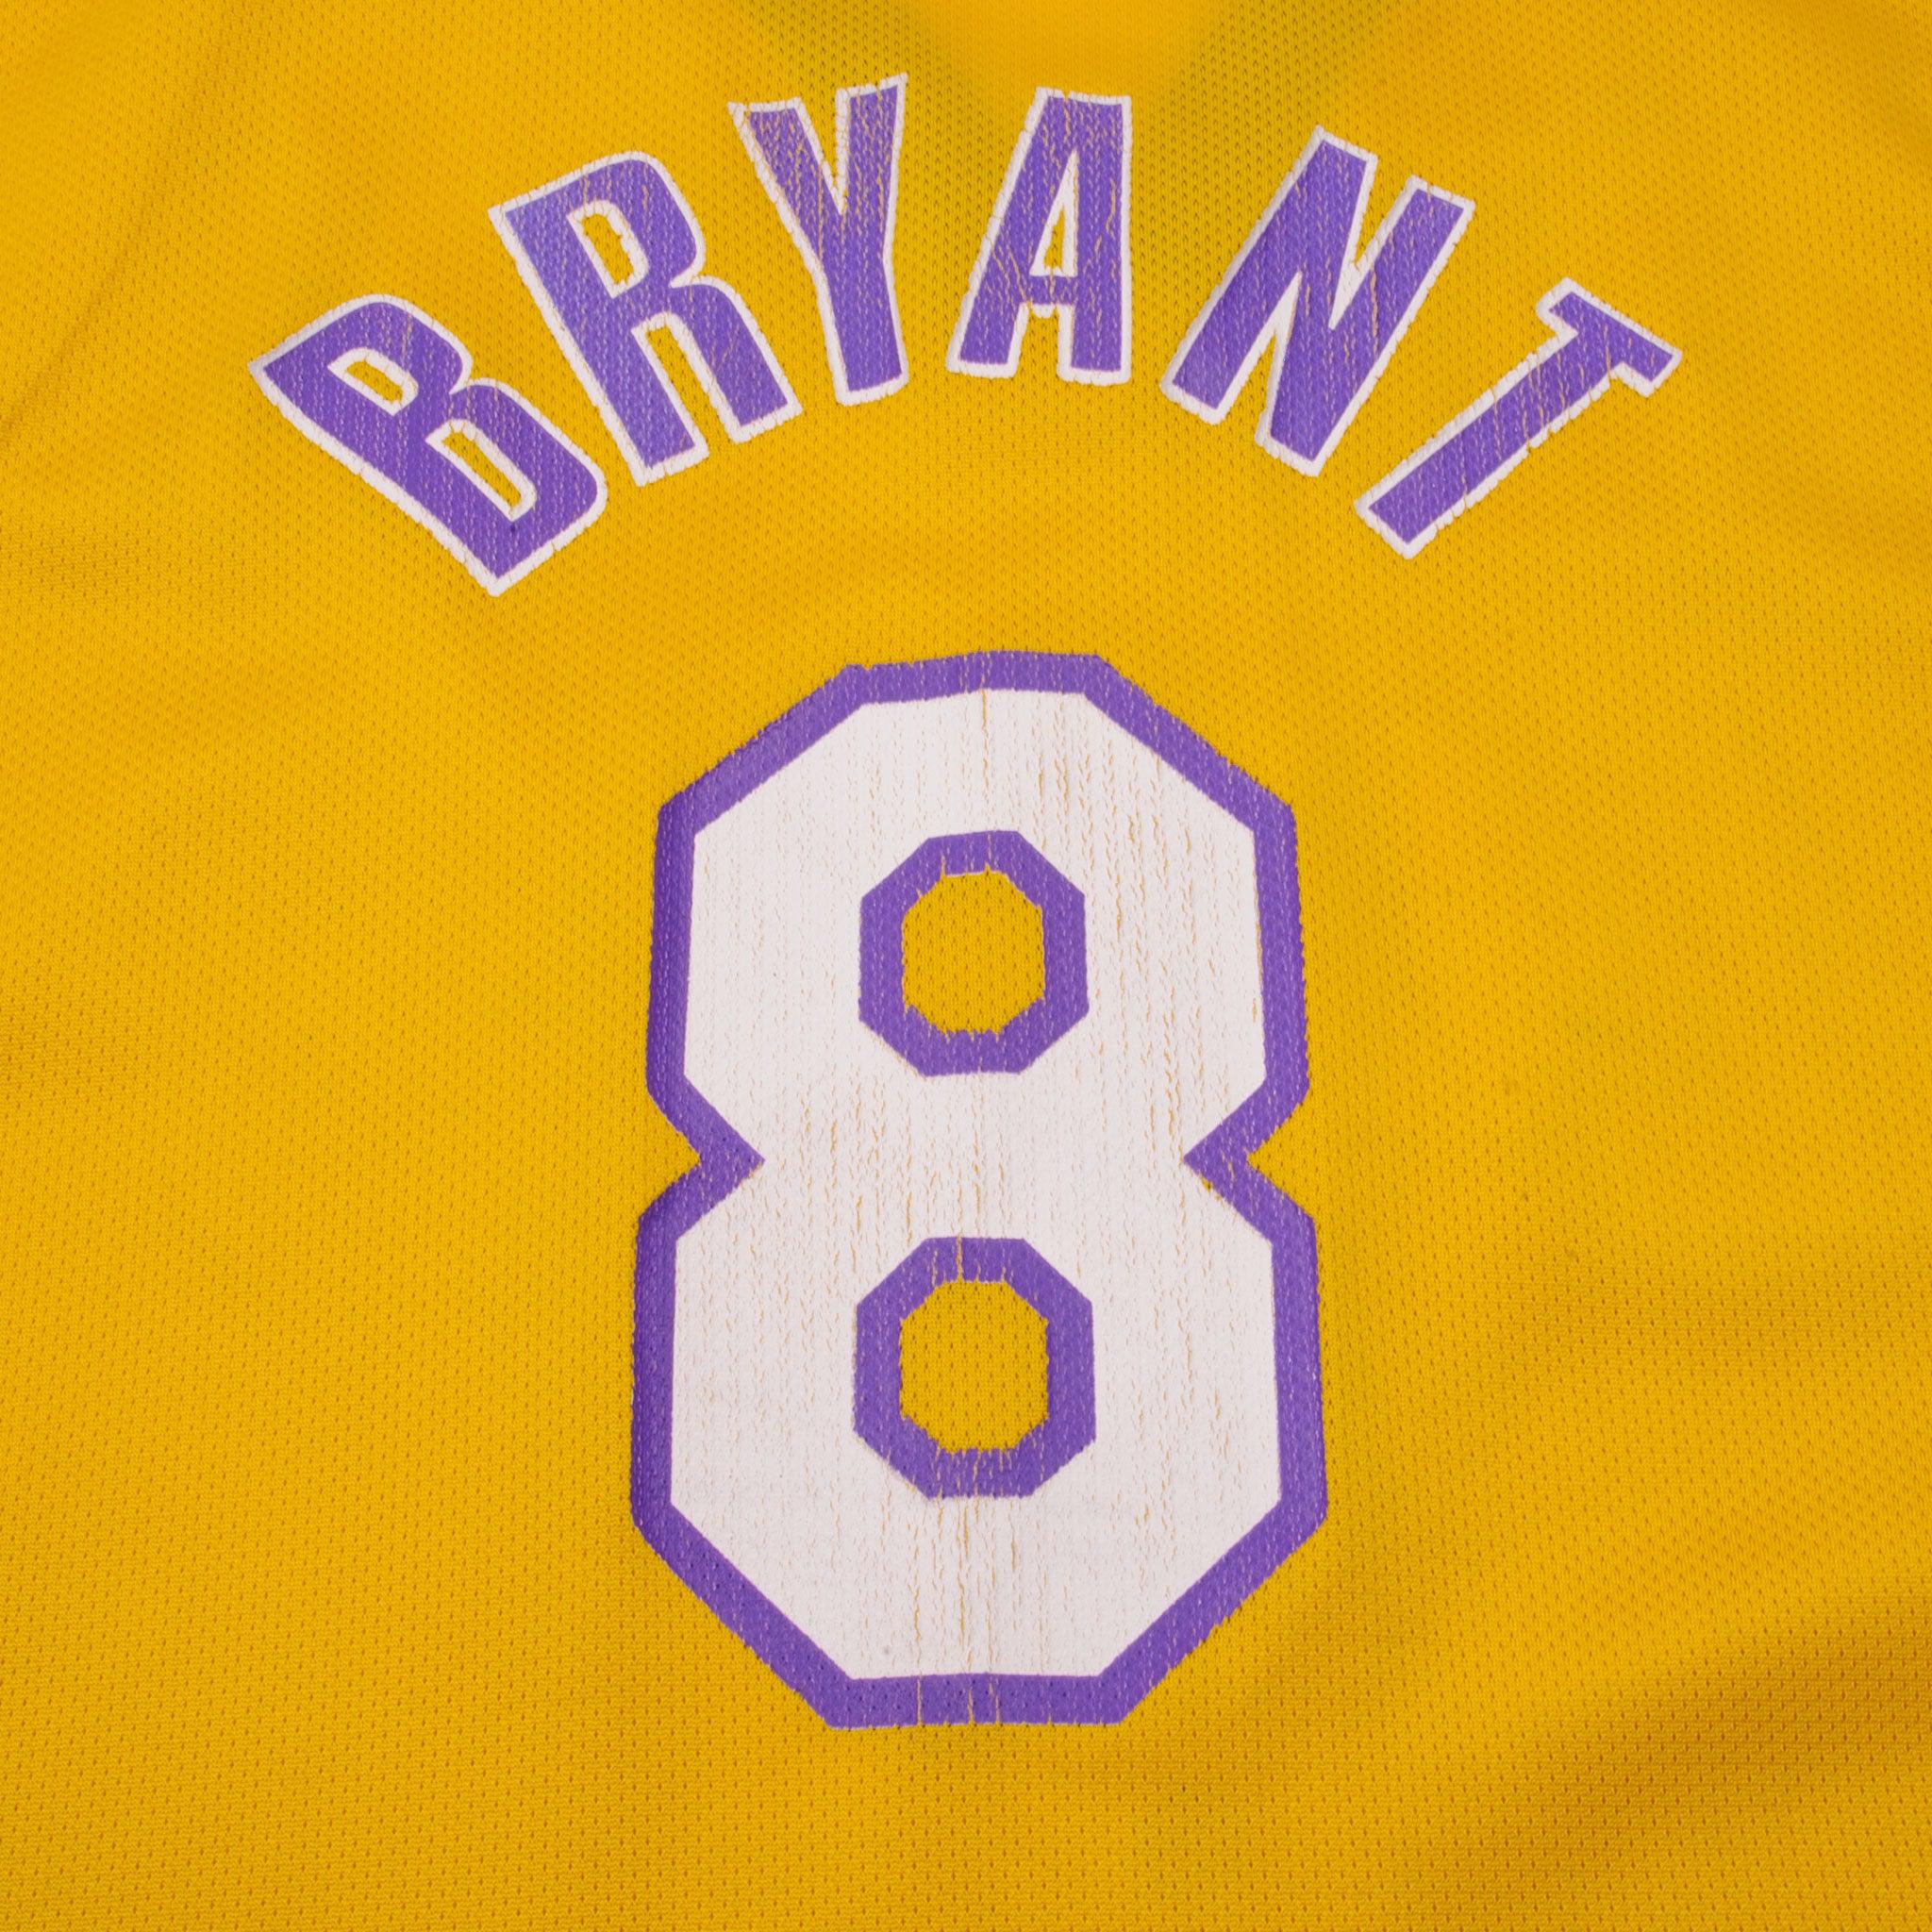 Kobe Bryant Champion Jersey Size 48 #8 Vintage 90s NBA LA Lakers